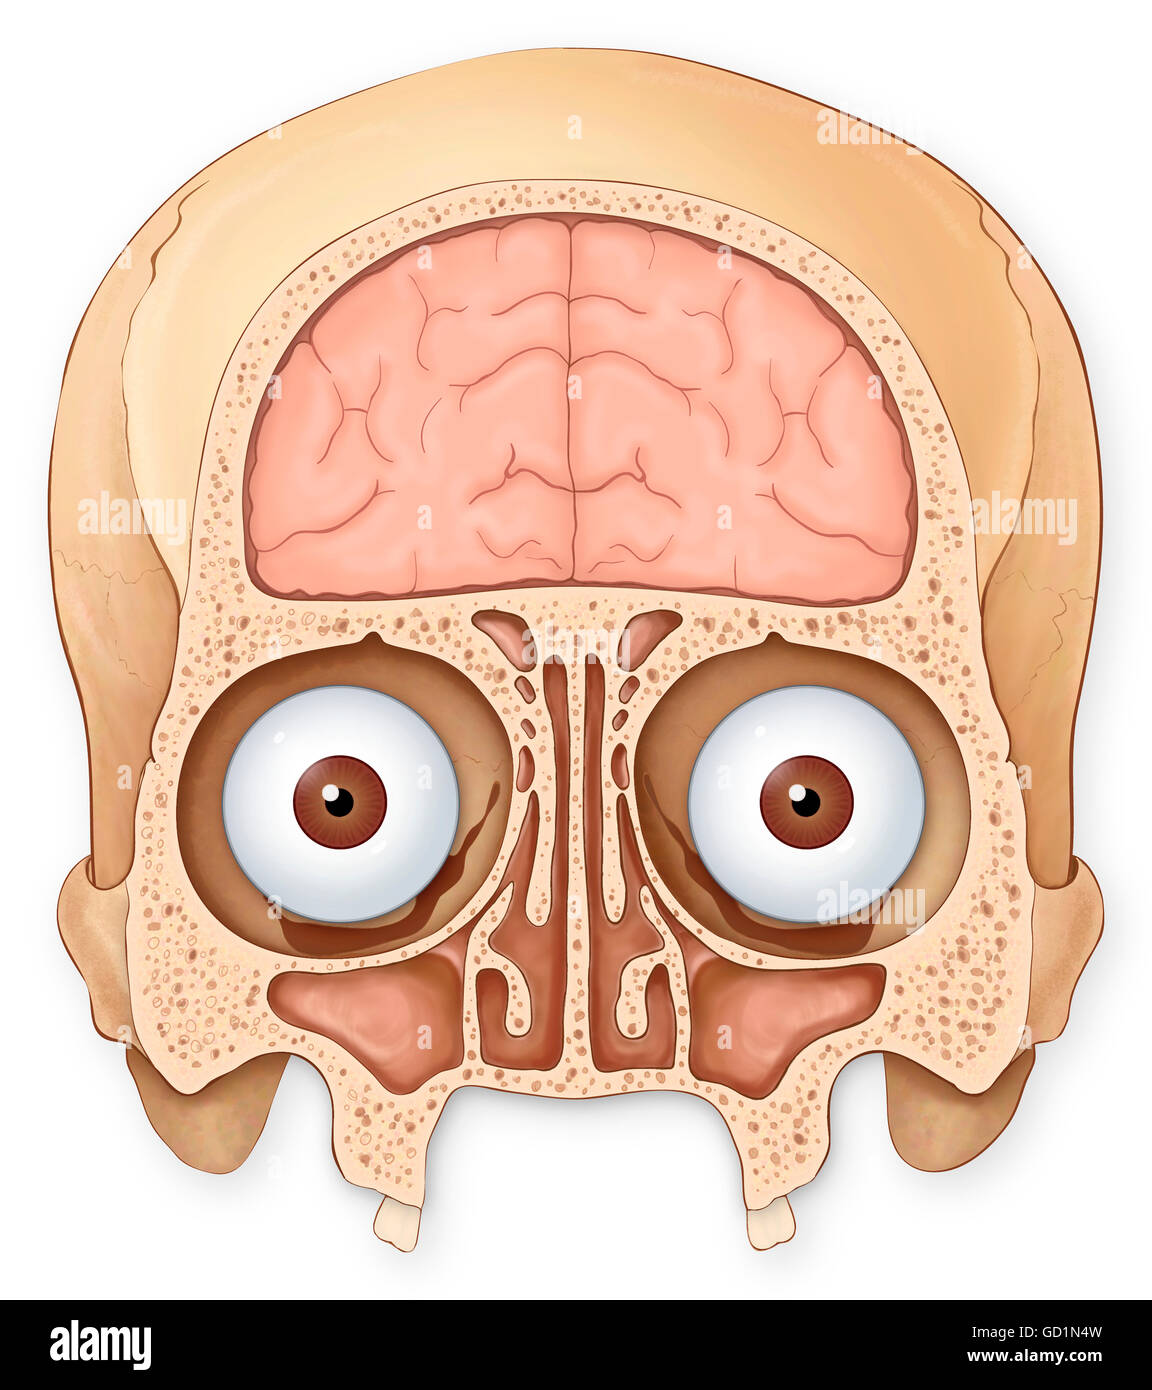 Normale sezione coronale del cranio e del cervello che mostra i seni coronale, lobo frontale del cervello, occhi e prese degli occhi Foto Stock